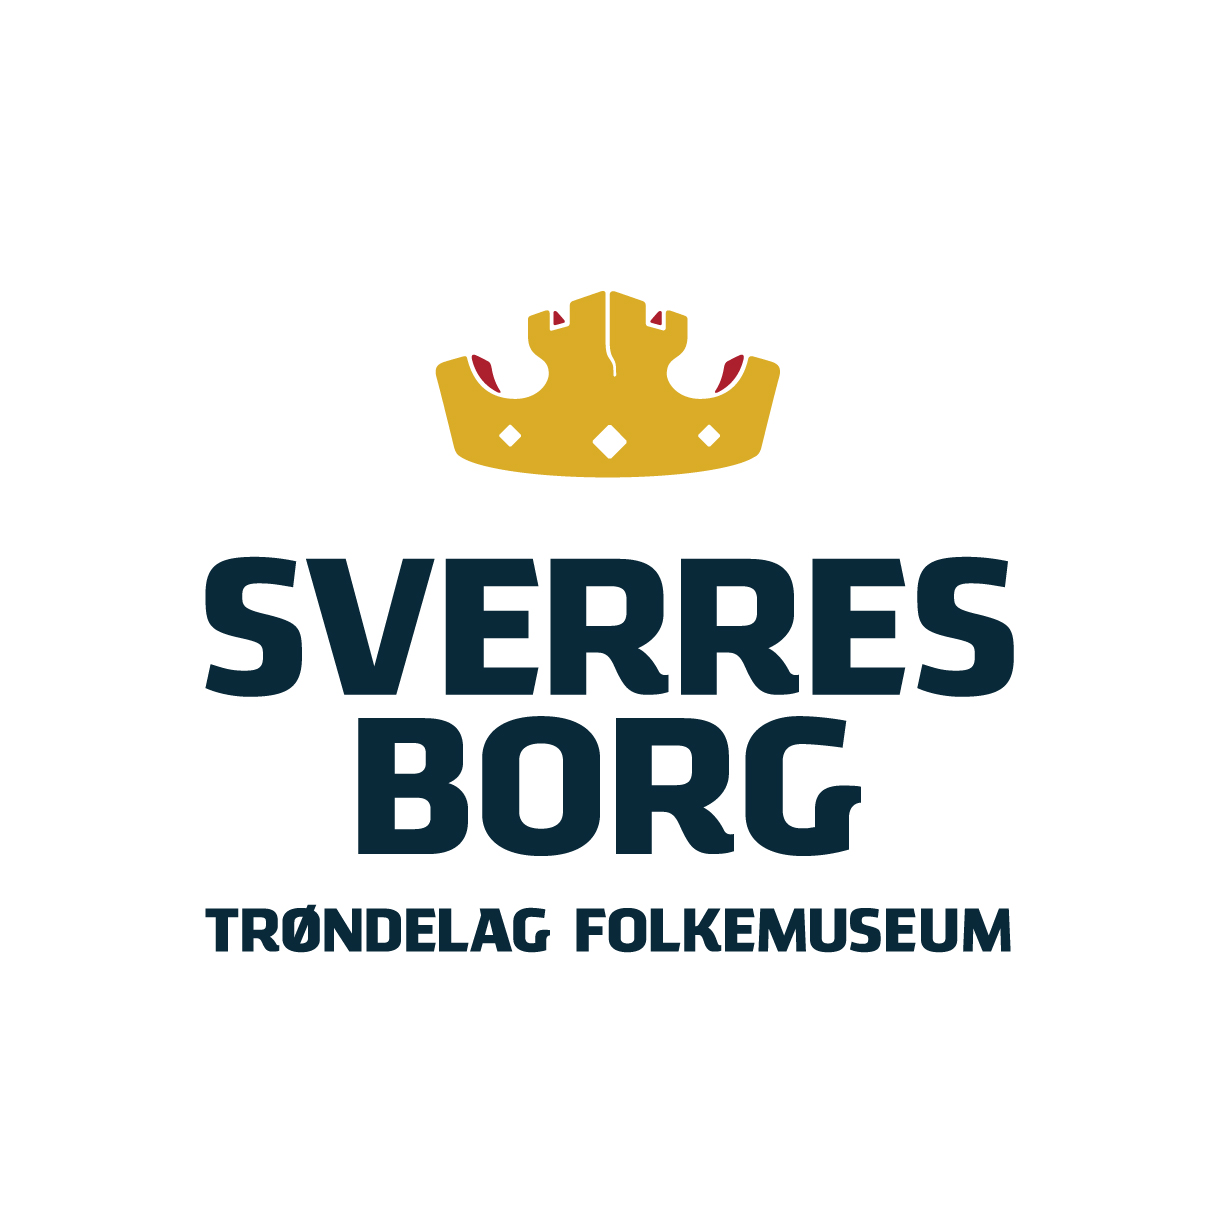 Sverresborg museum